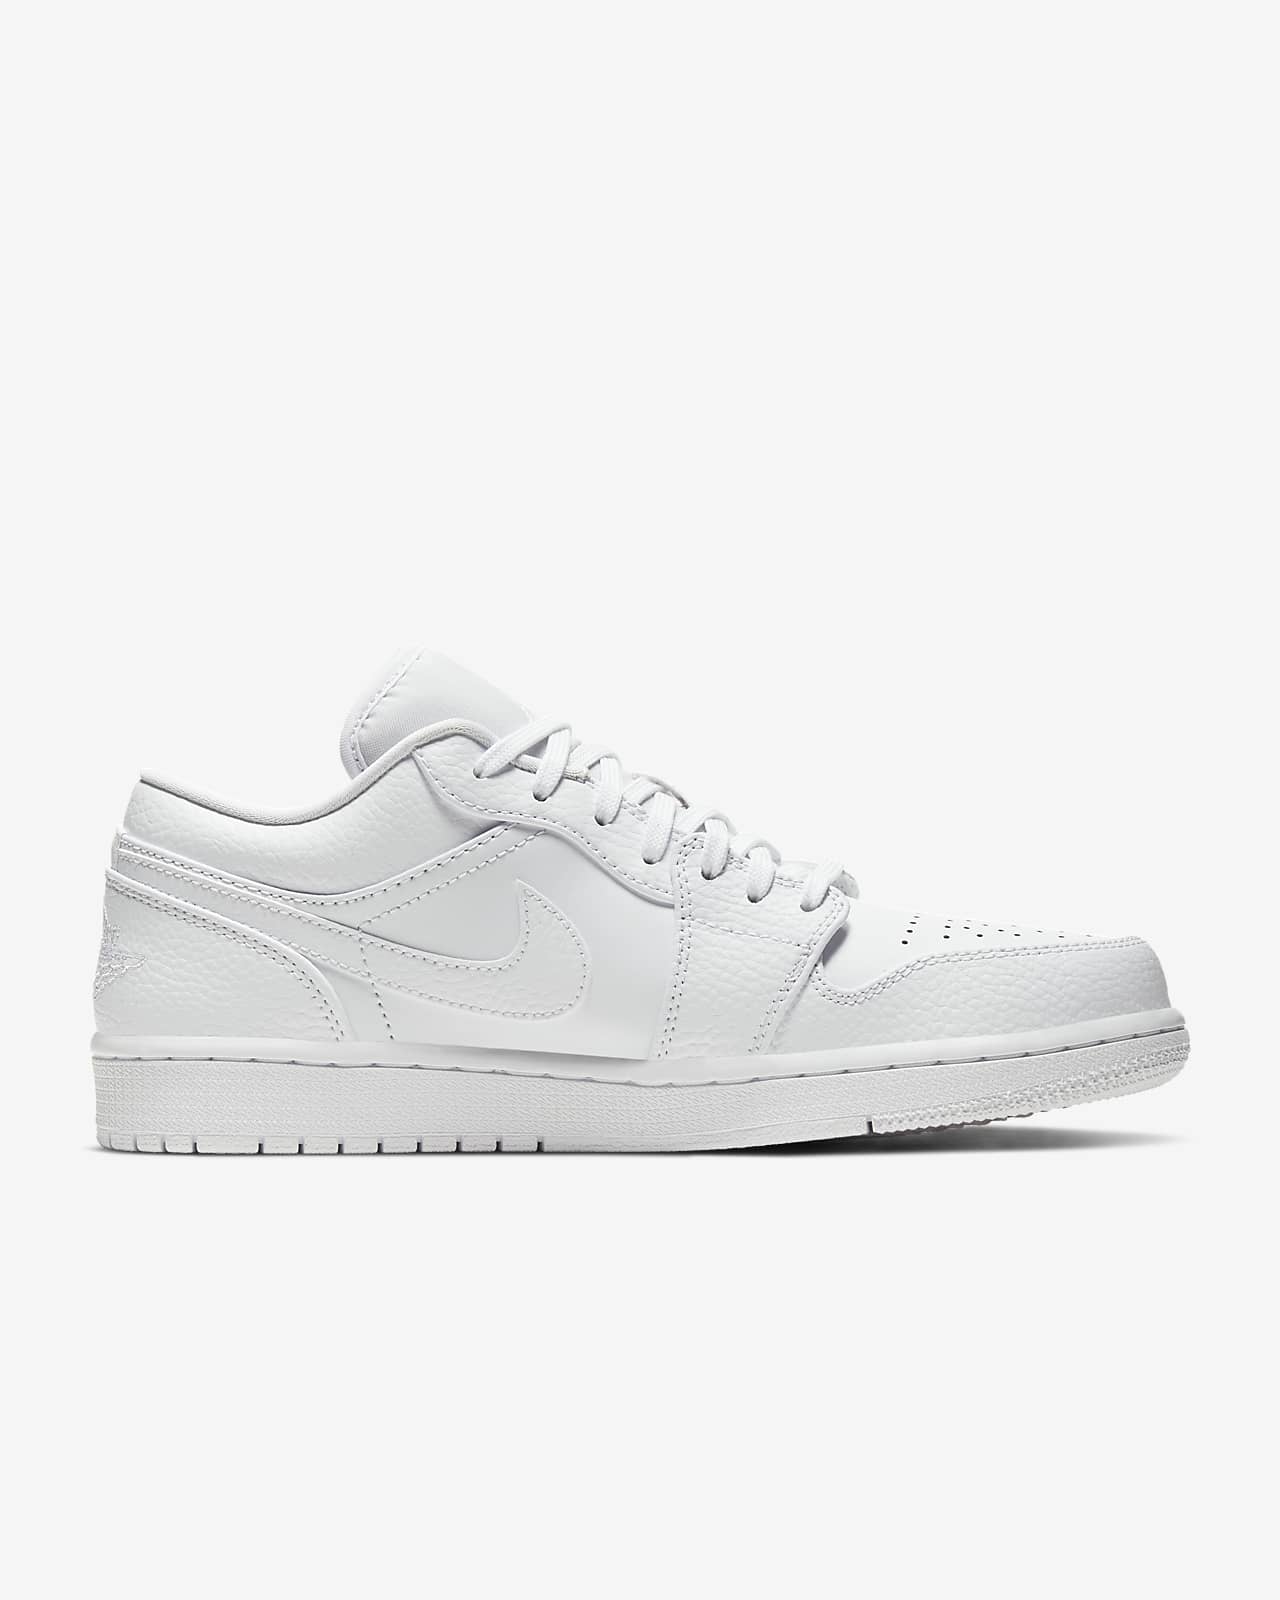 Air Jordan 1 Low Shoe Nike Id